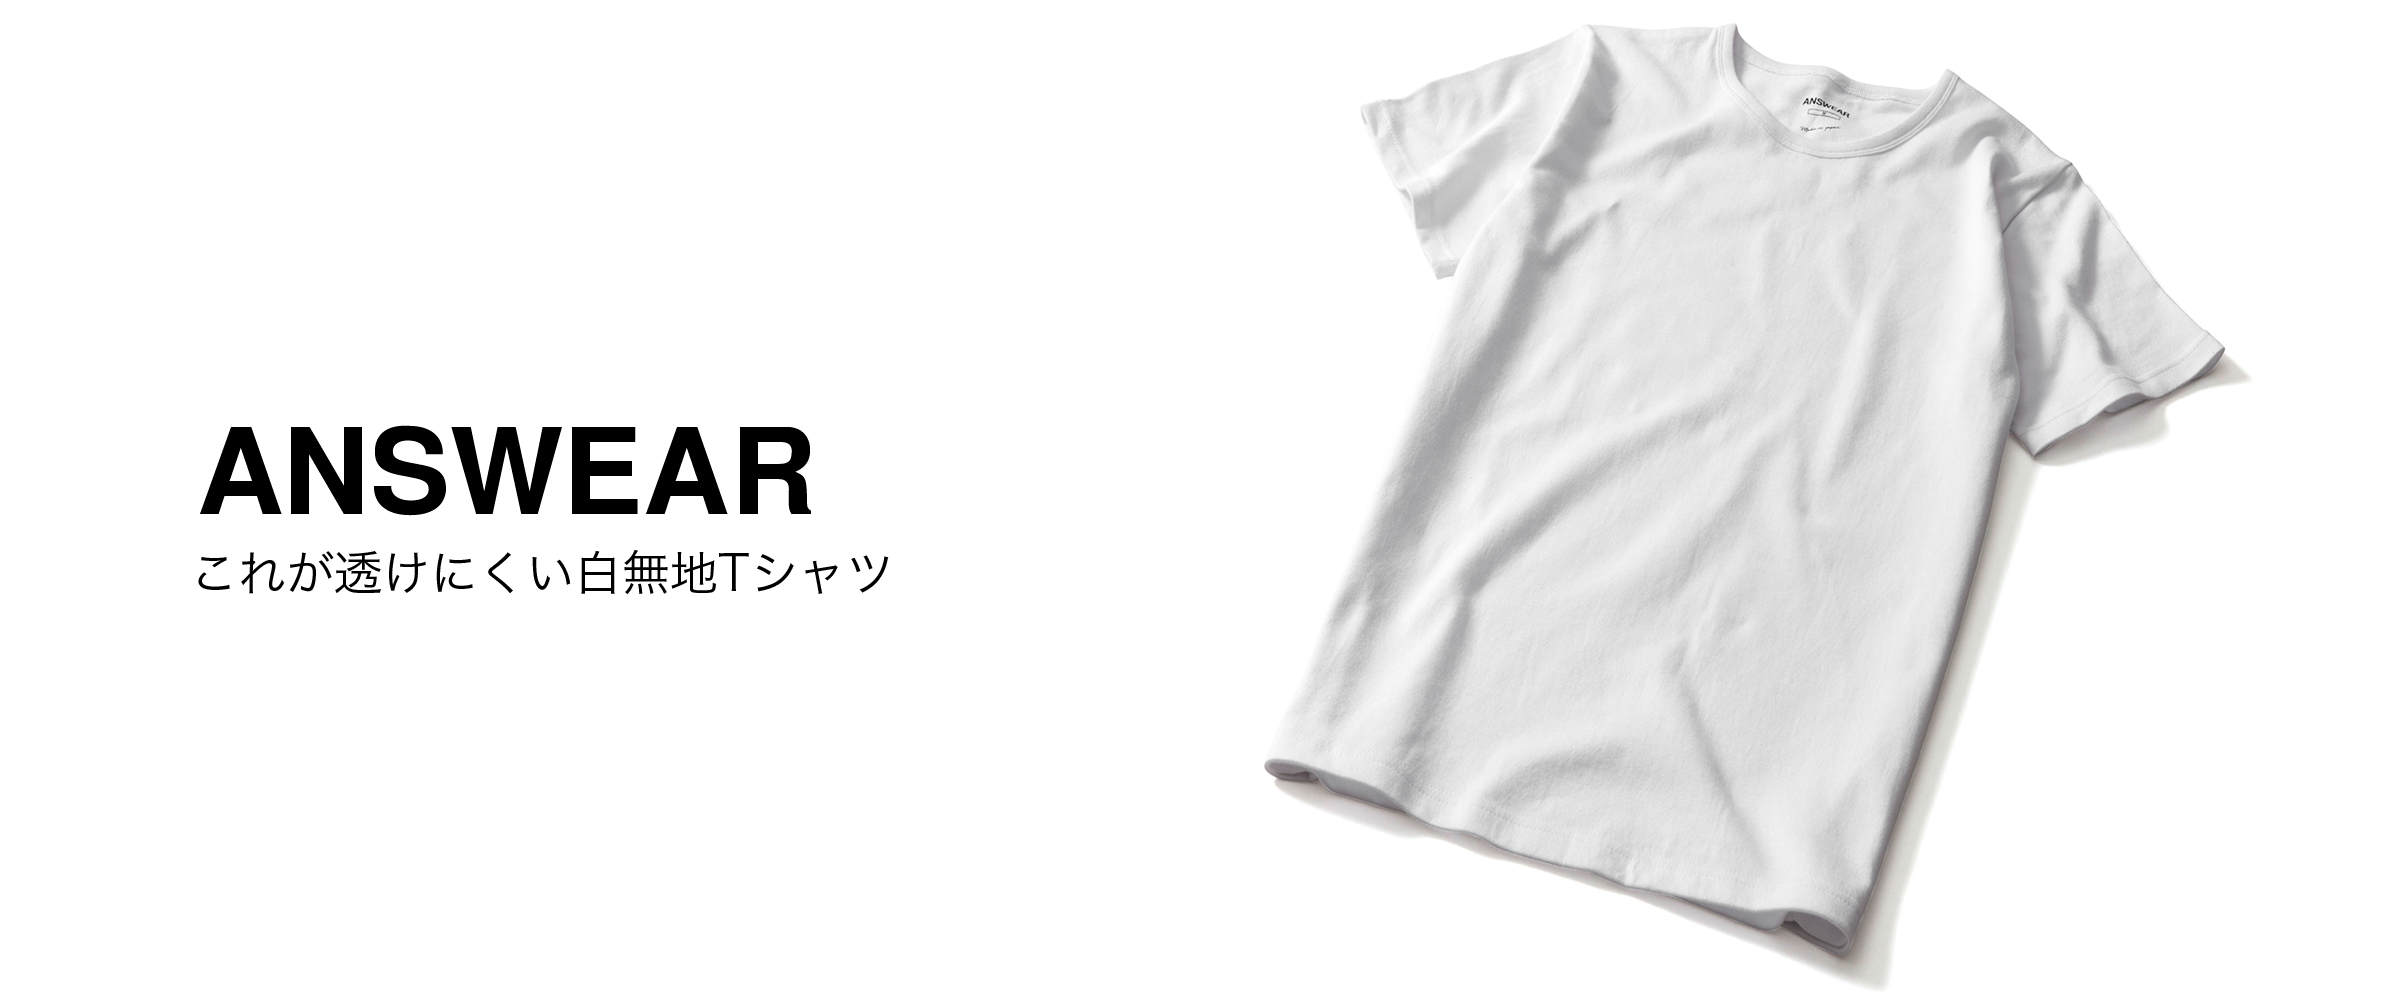 セミオーダー感覚のお直しサービス 透けにくい白無地tシャツ であなただけのマイサイズが手に入る ゴーピークデザイン事務所のプレスリリース